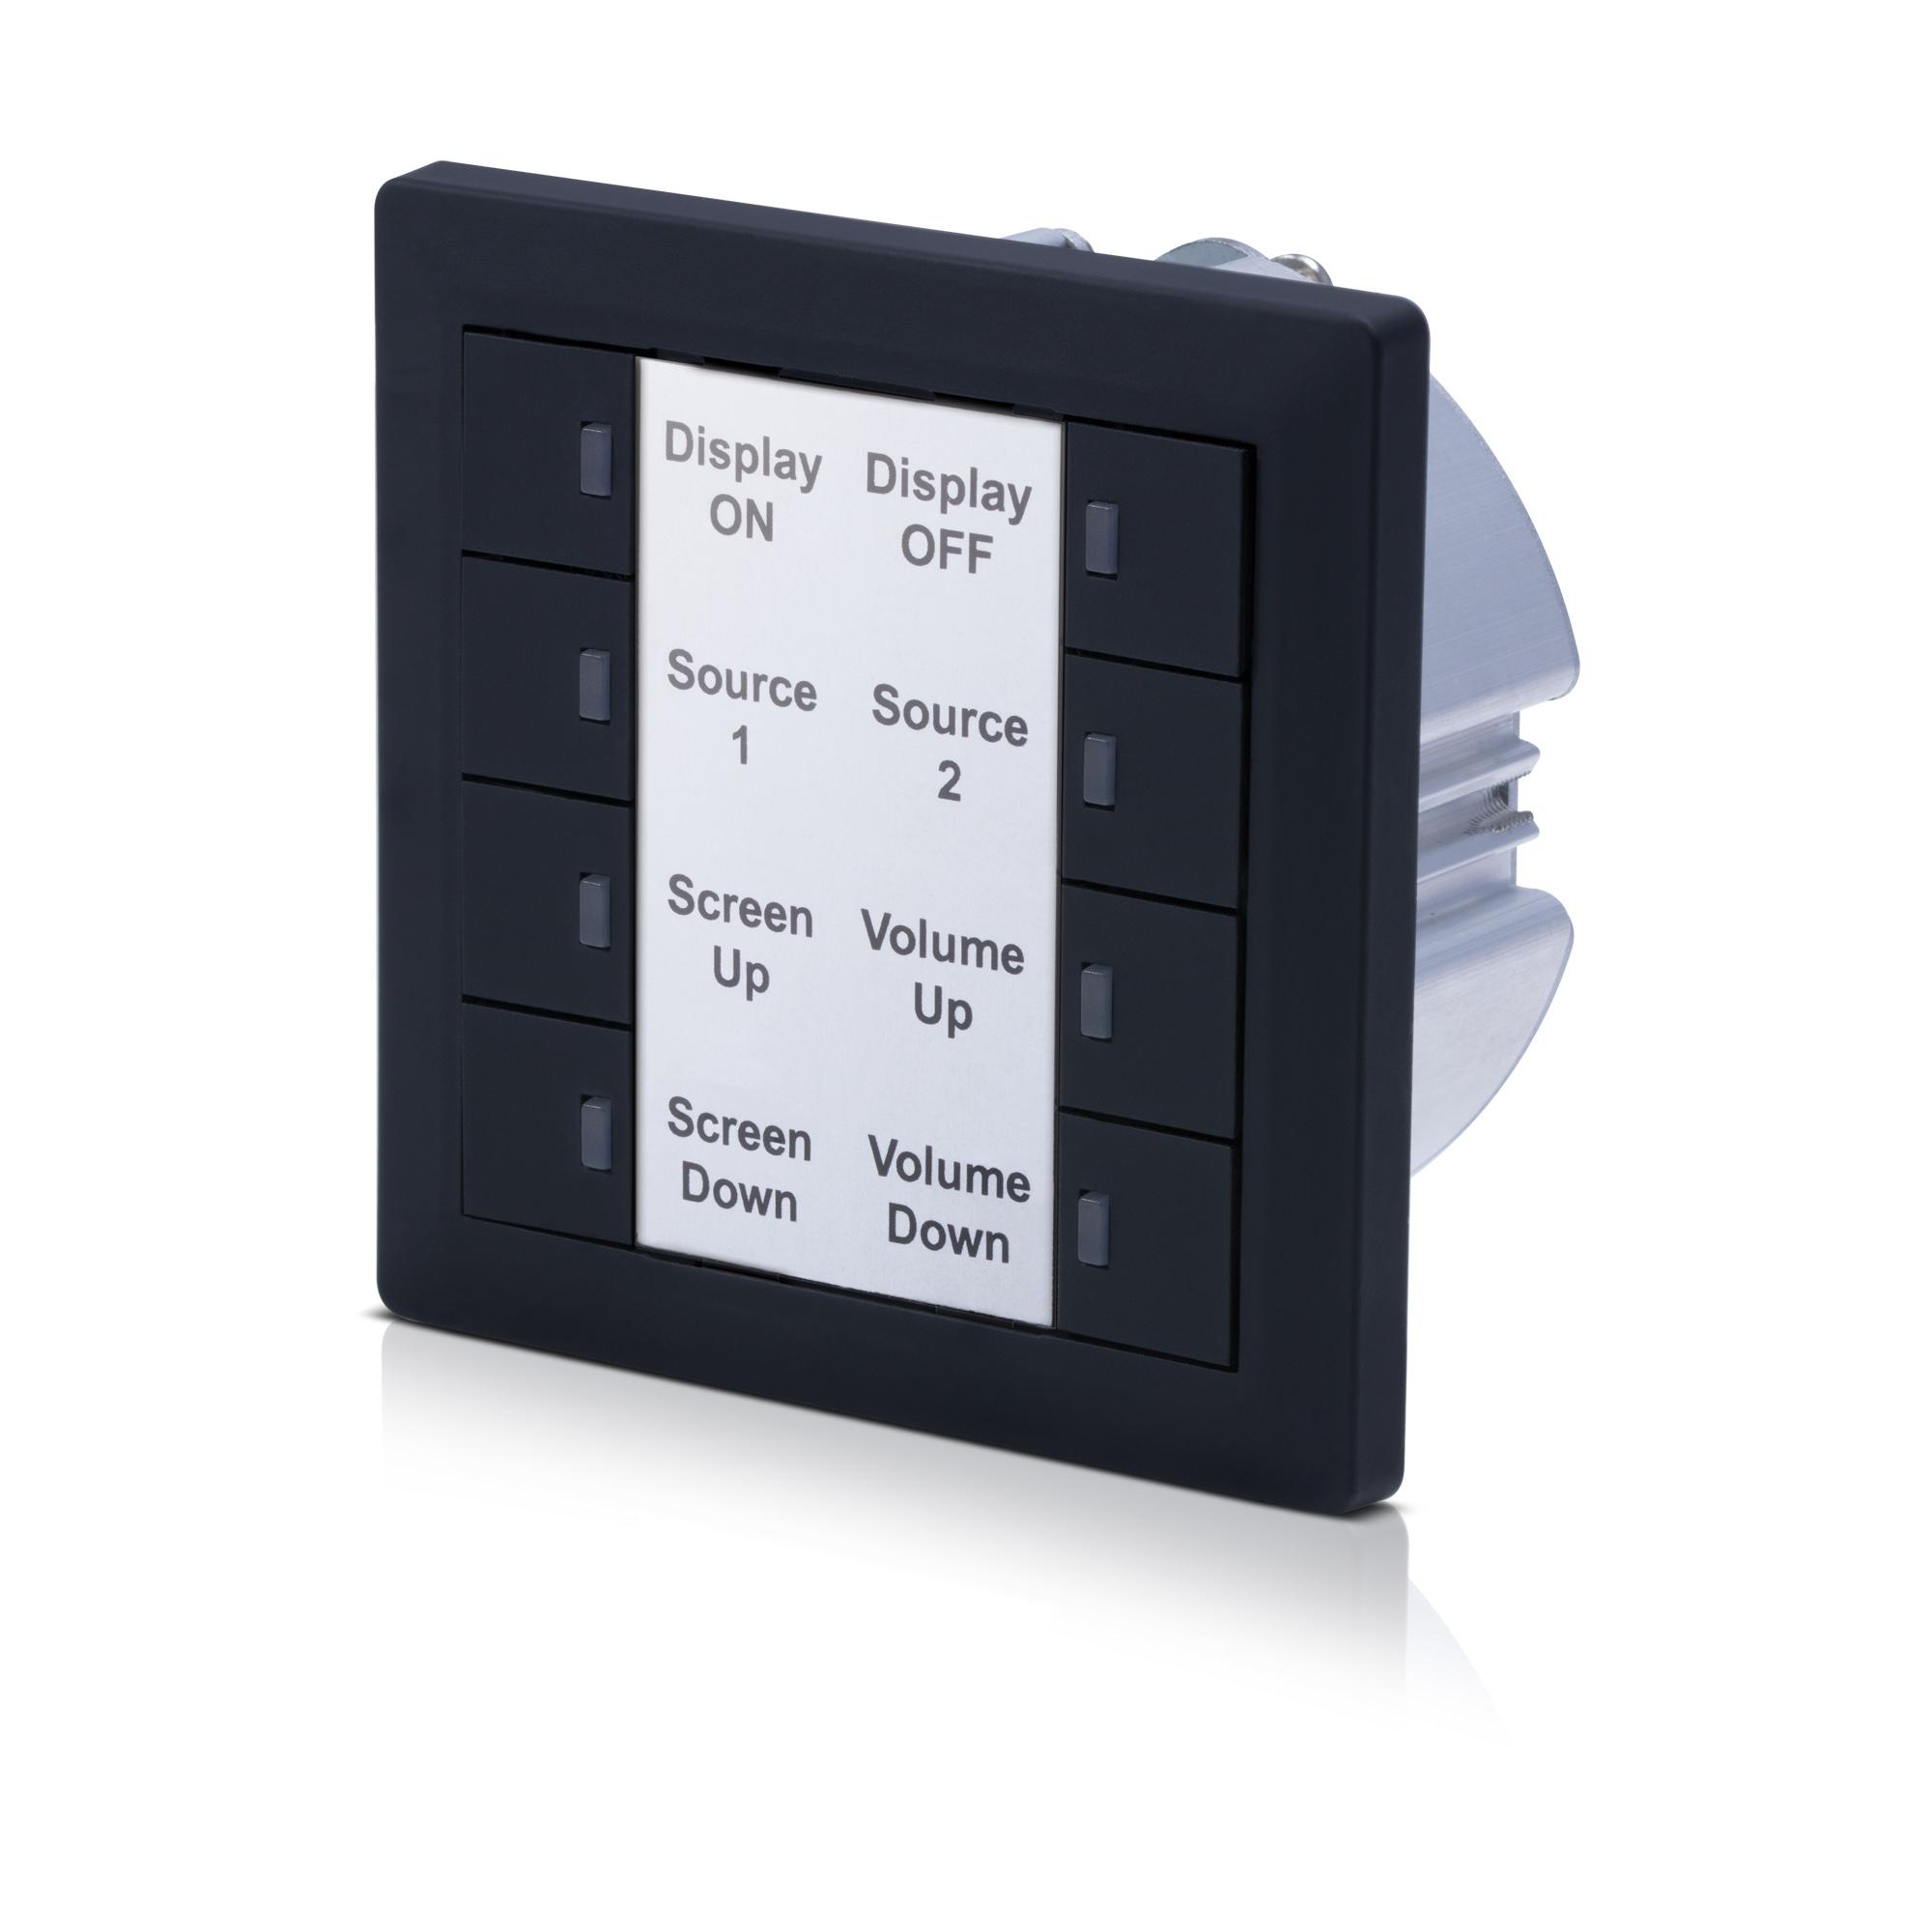 CR-TG2 - 8 Key Control Keypad